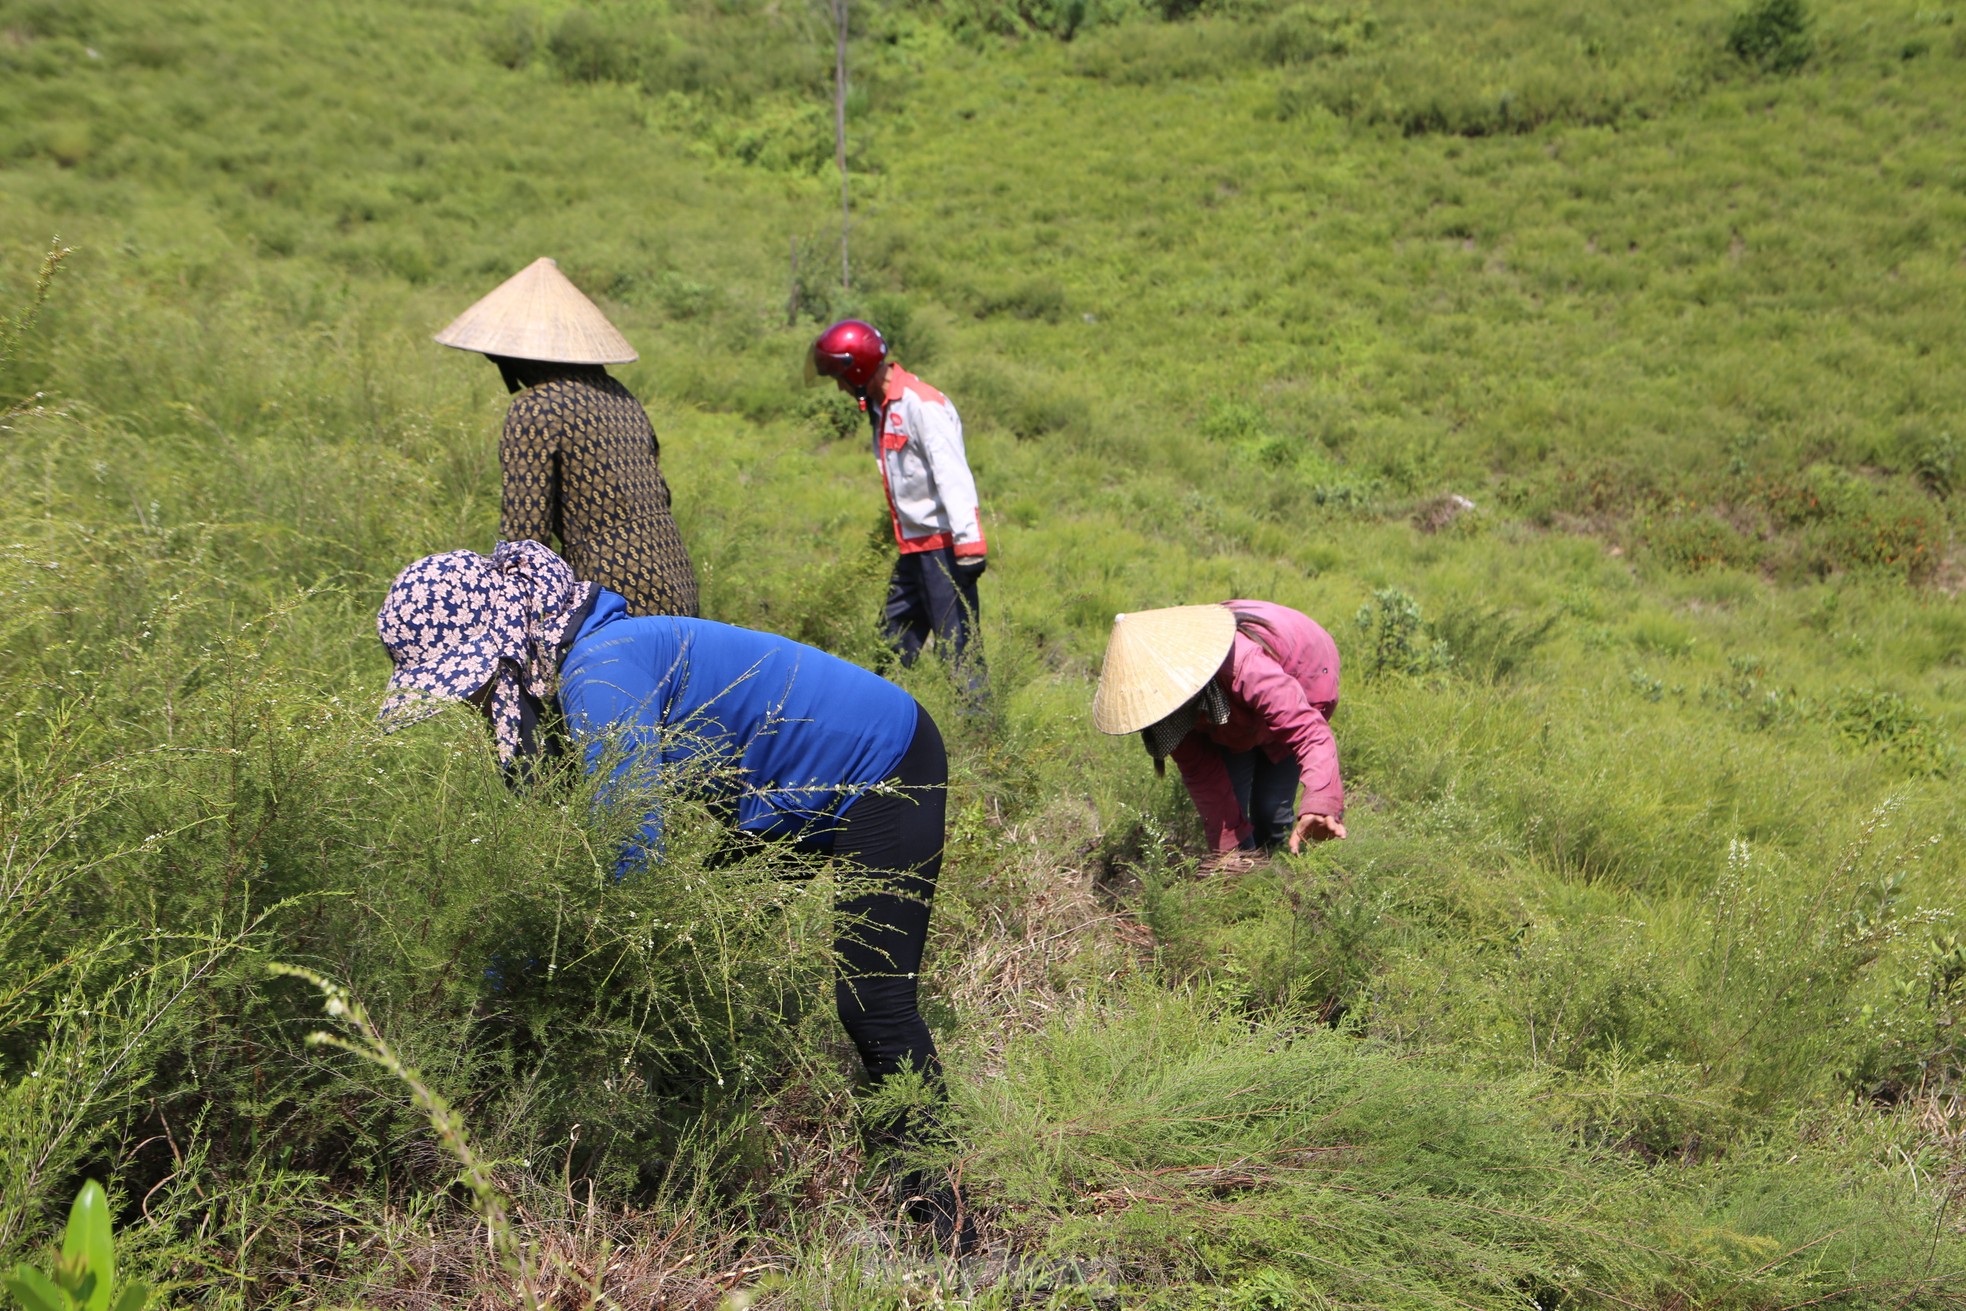 Nông dân Hà Tĩnh kiếm bộn tiền từ cây mọc hoang trên rừng - Ảnh 2.